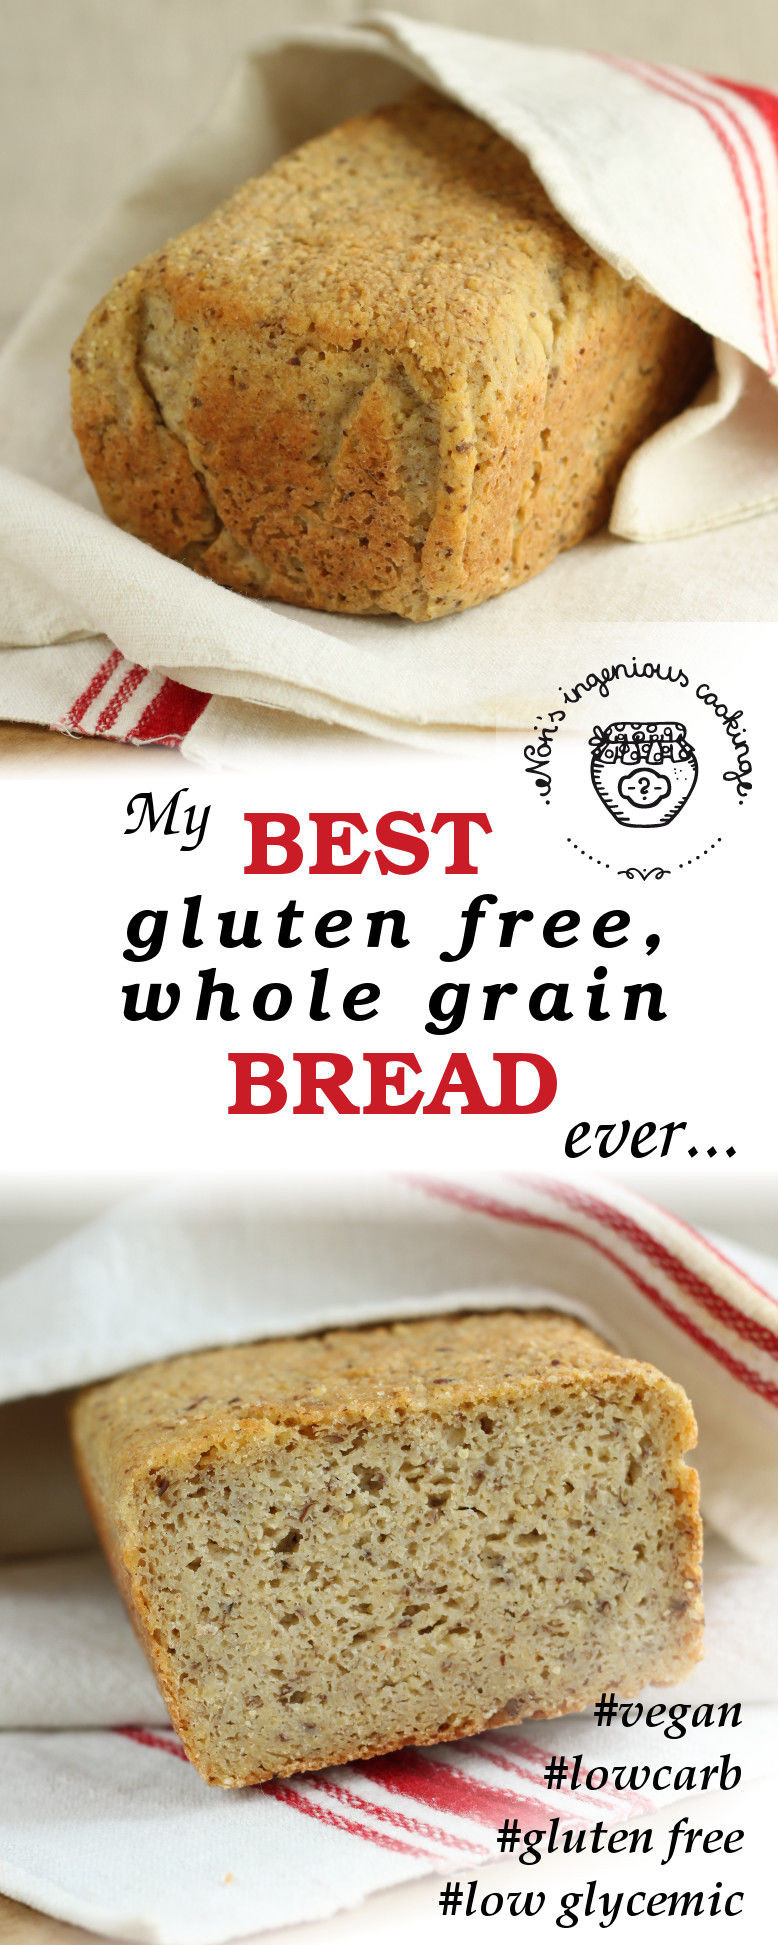 Best Gluten Free Bread Recipe
 My best gluten free whole grain bread ever vegan